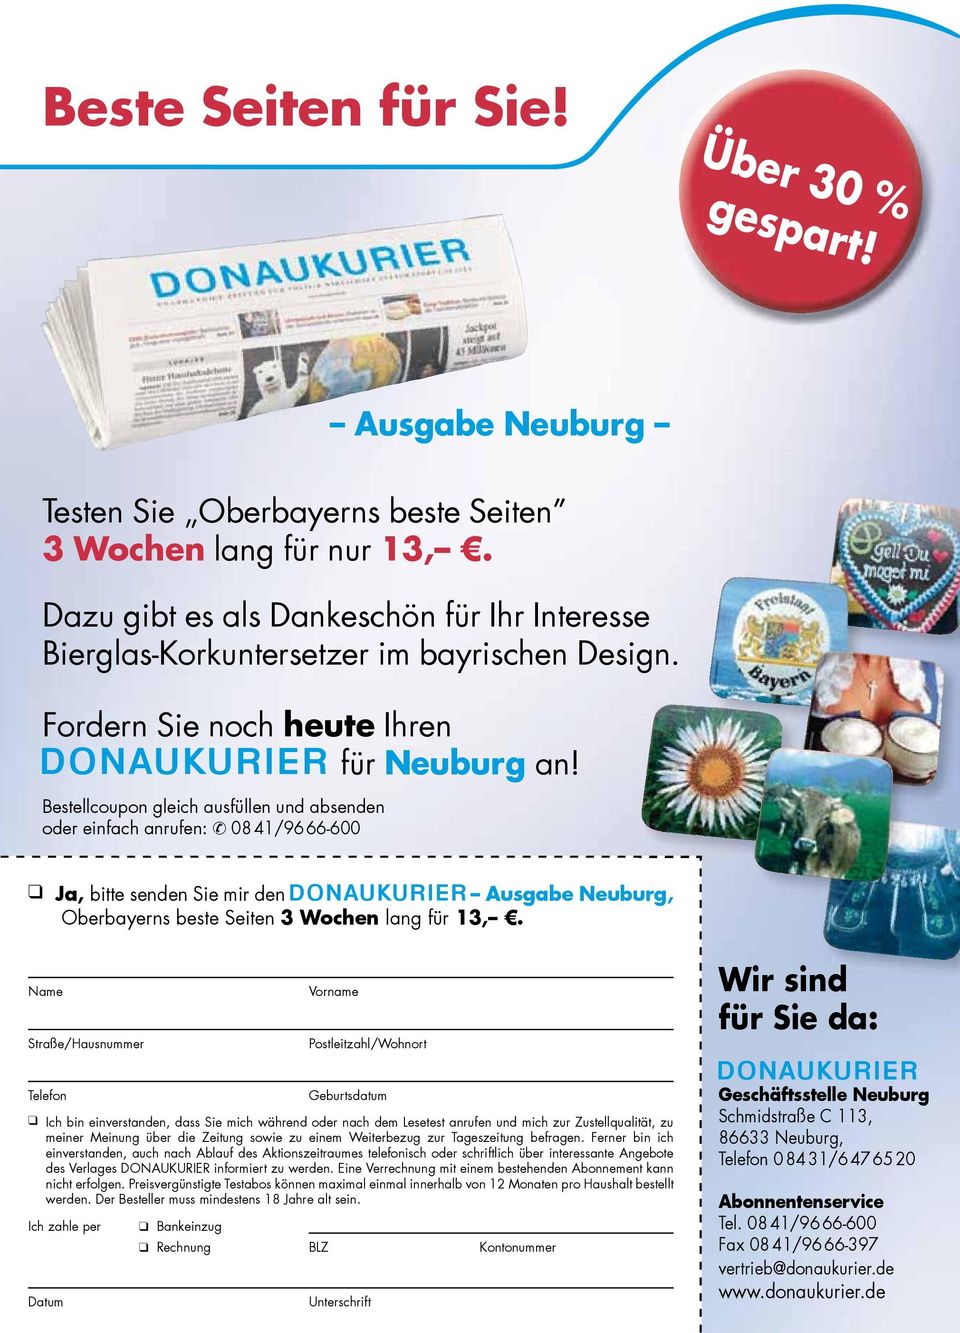 Bestellcoupon gleich ausfüllen und absenden oder einfach anrufen: 08 41/96 66-600 Ja, bitte senden Sie mir den Ausgabe Neuburg, Oberbayerns beste Seiten 3 Wochen lang für 13,.